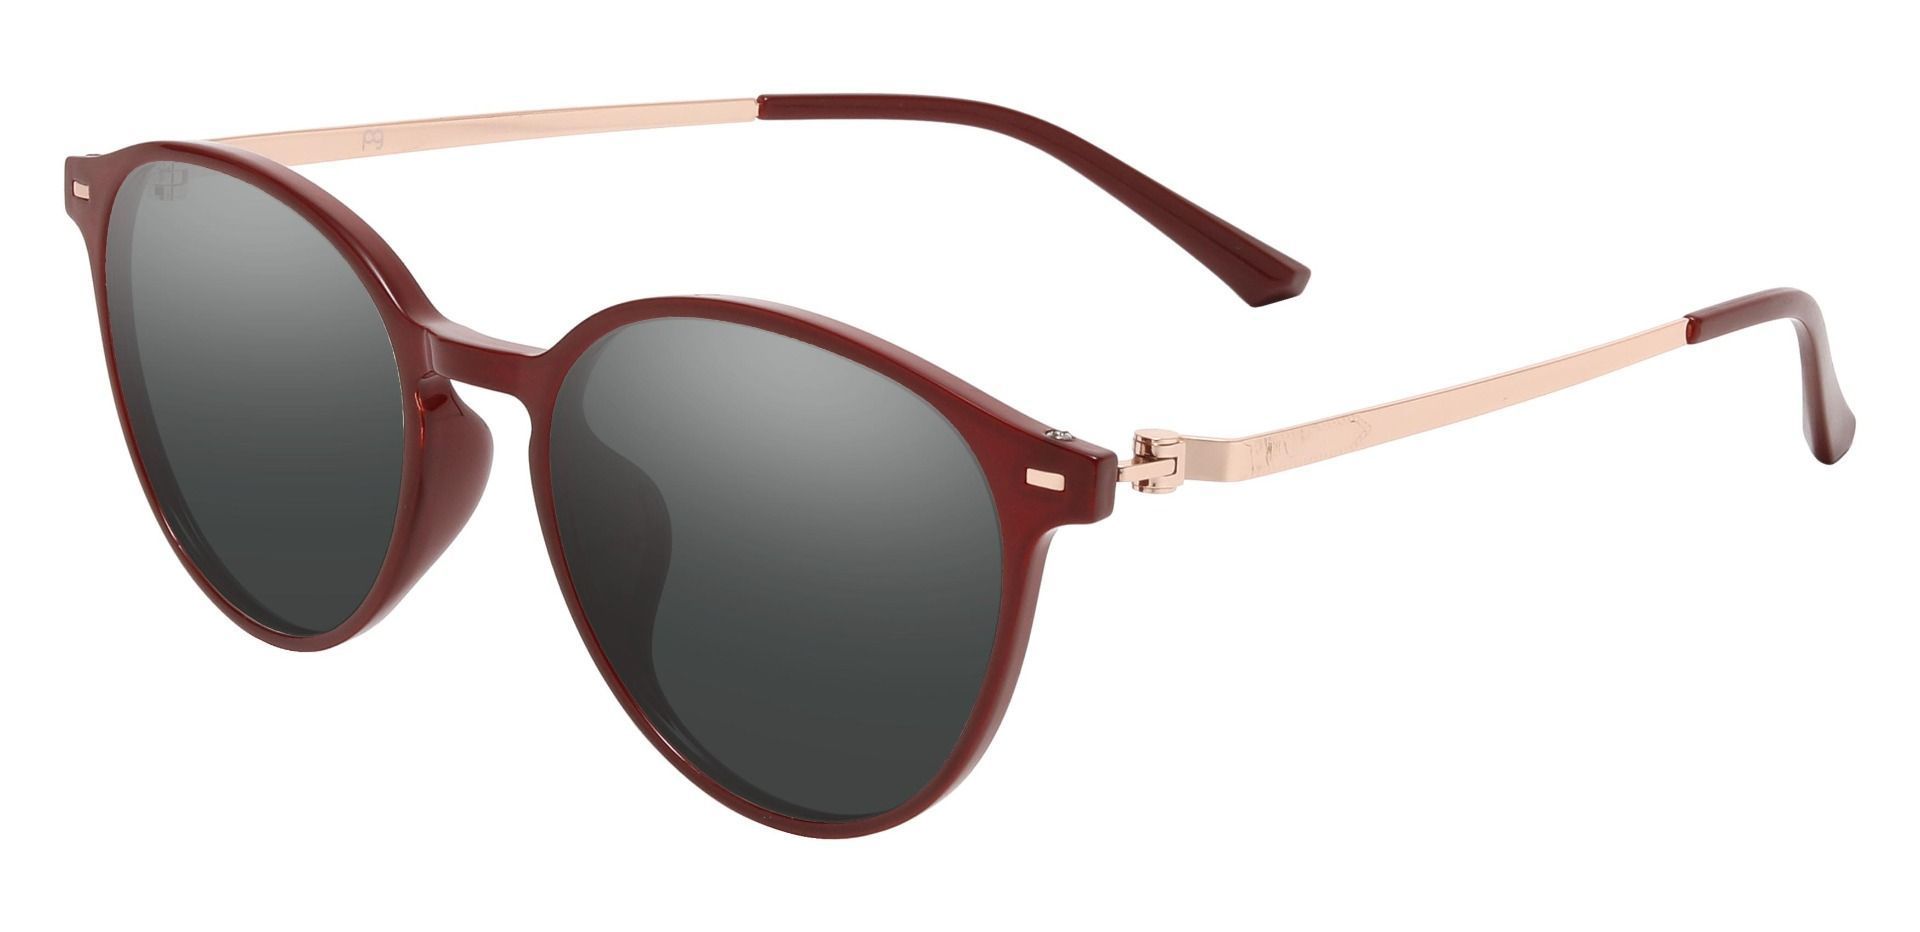 Springer Round Progressive Sunglasses - Red Frame With Gray Lenses